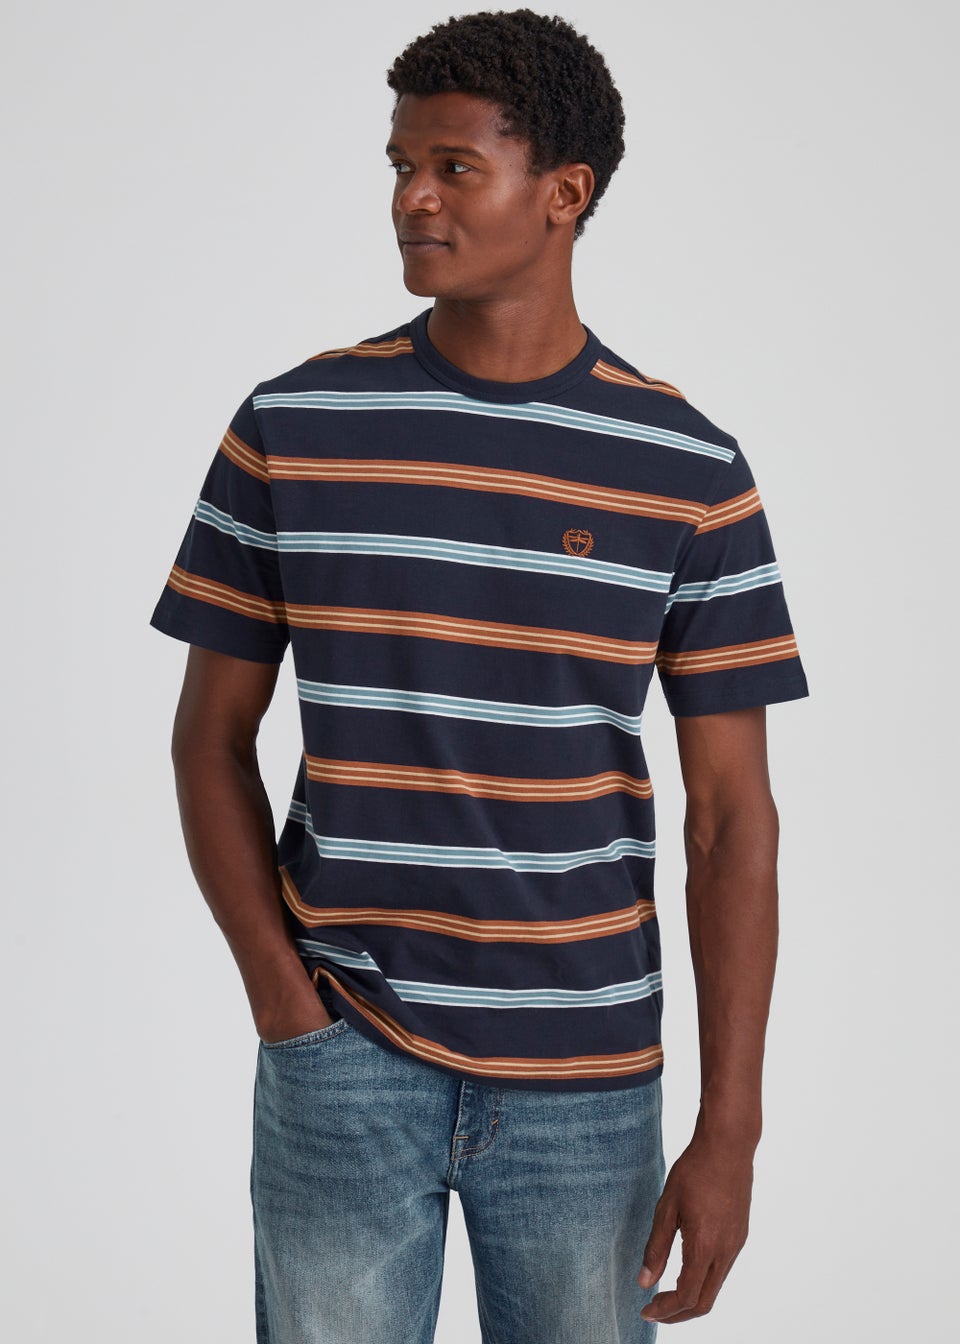 Burgundy & Navy Stripe T-Shirt